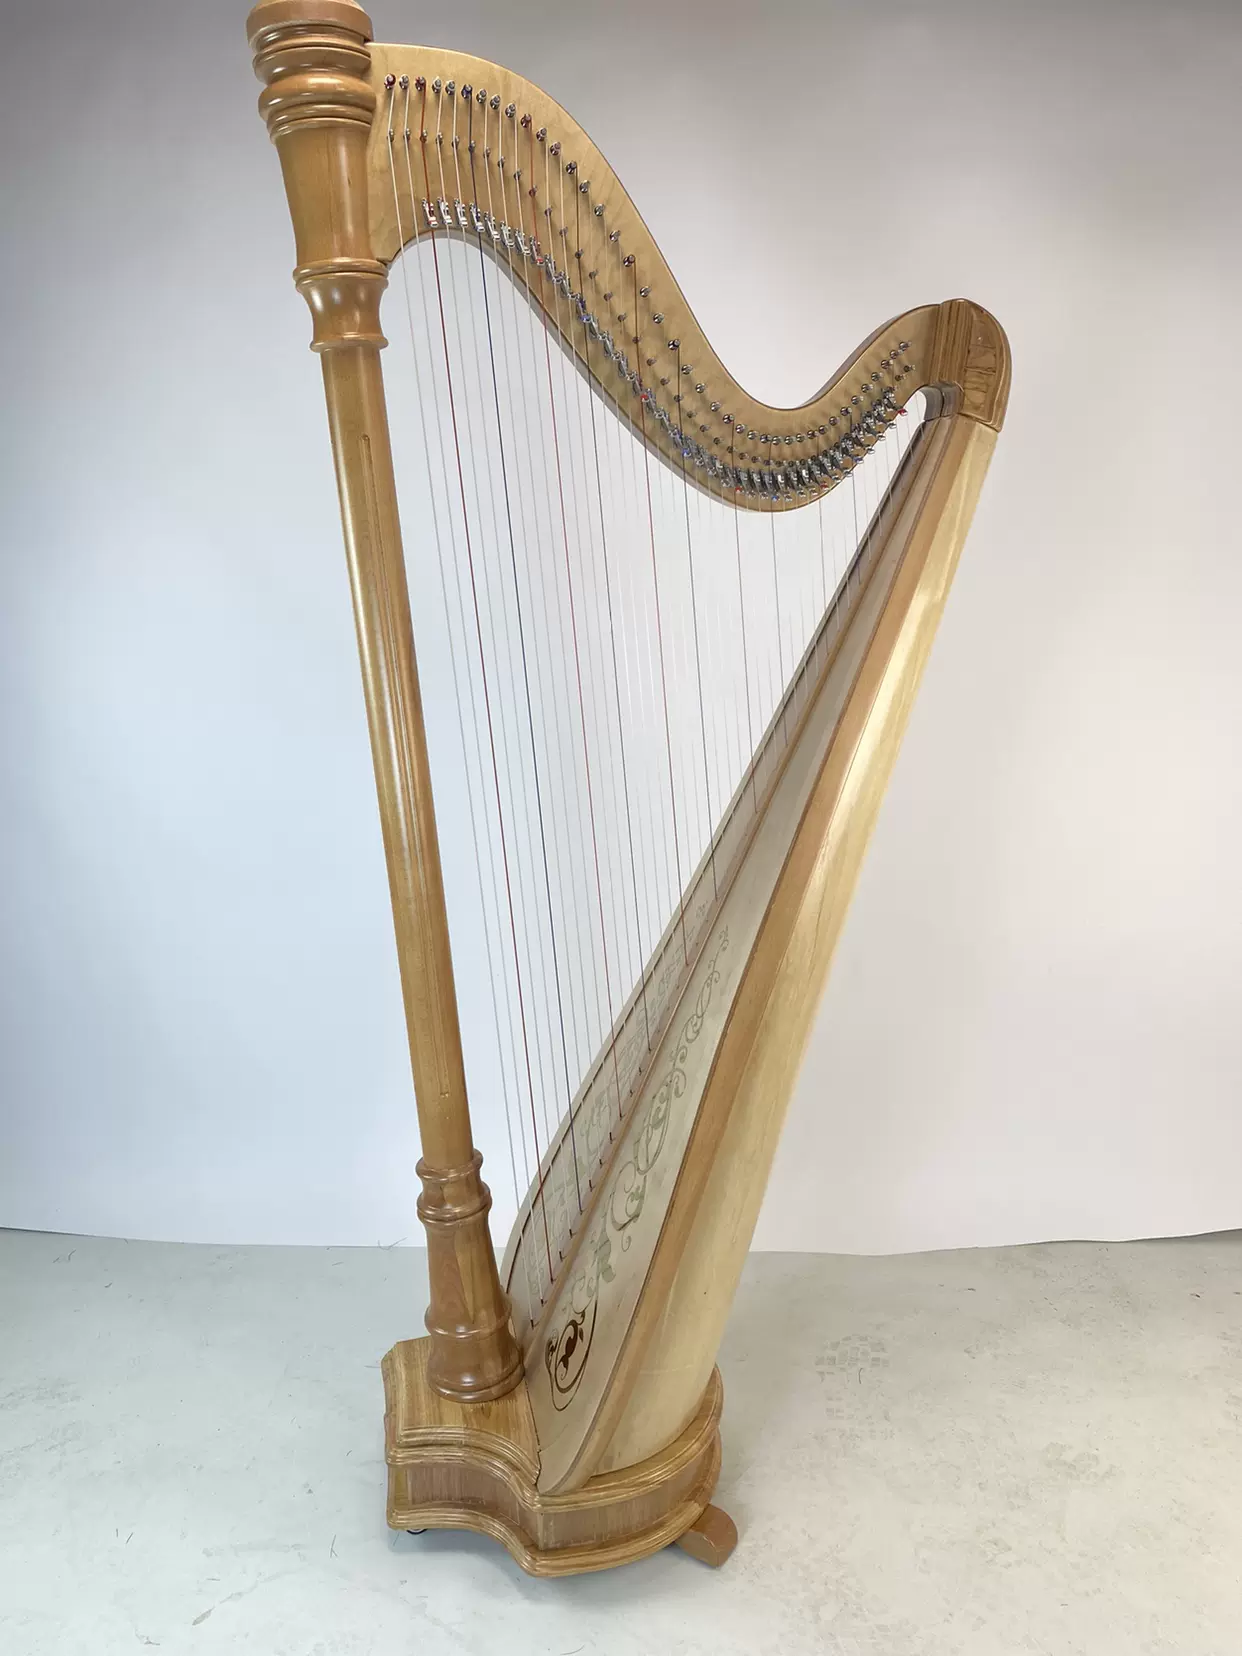 40弦竖琴古典式立柱竖琴爱尔兰大竖琴半音键竖琴专业演奏乐器-Taobao